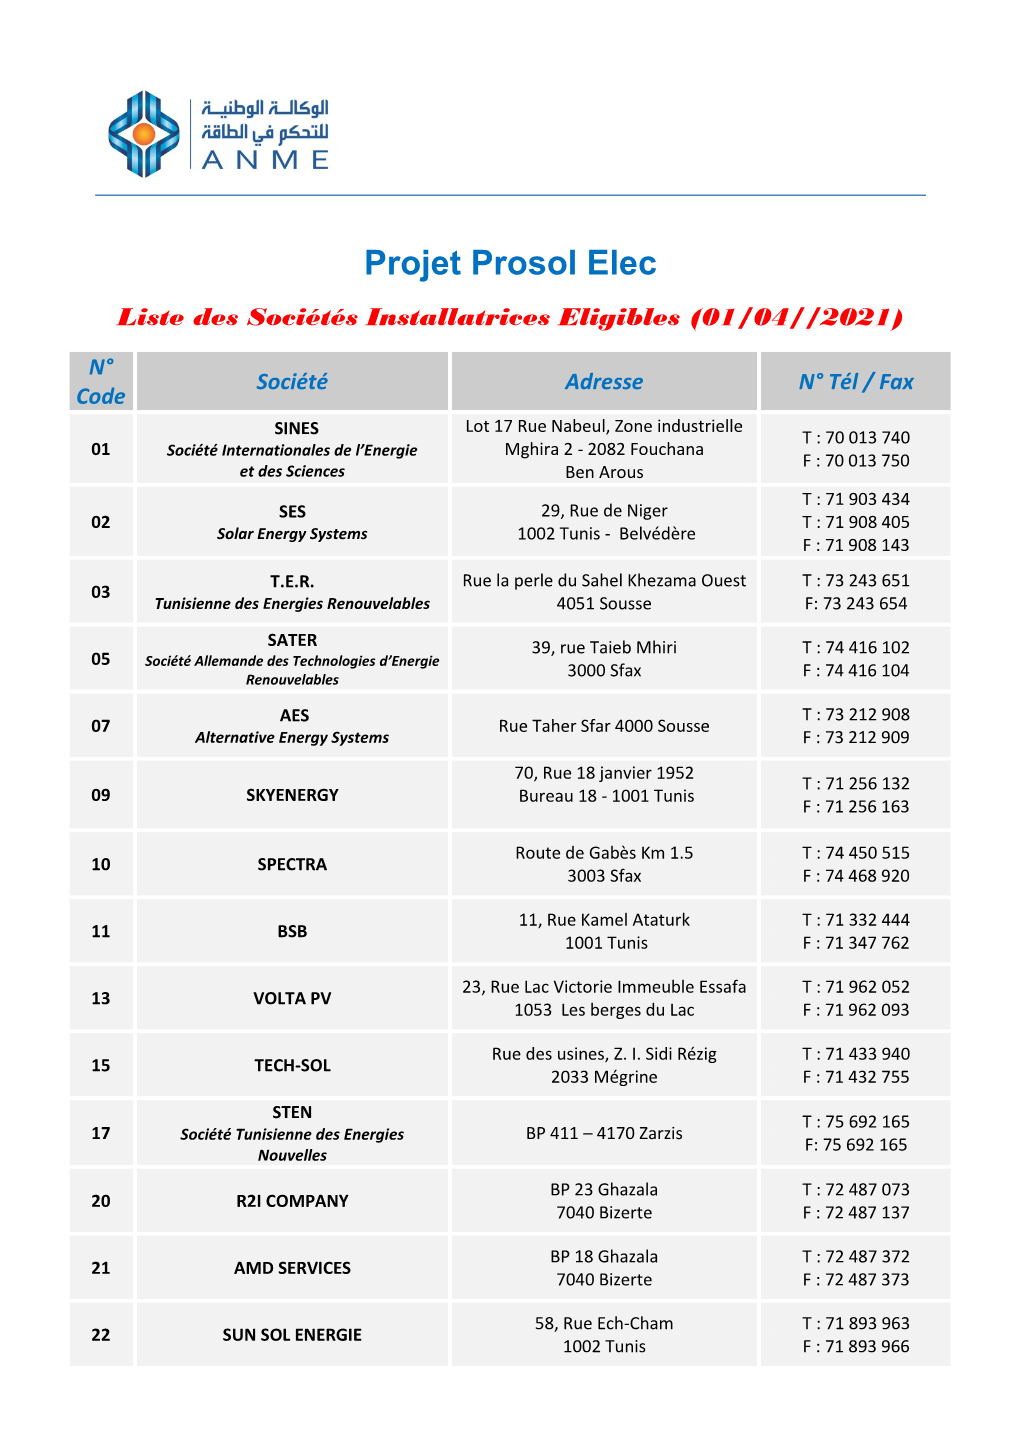 Prosol Elec Liste Des Sociétés Installatrices Eligibles (01/04//2021)